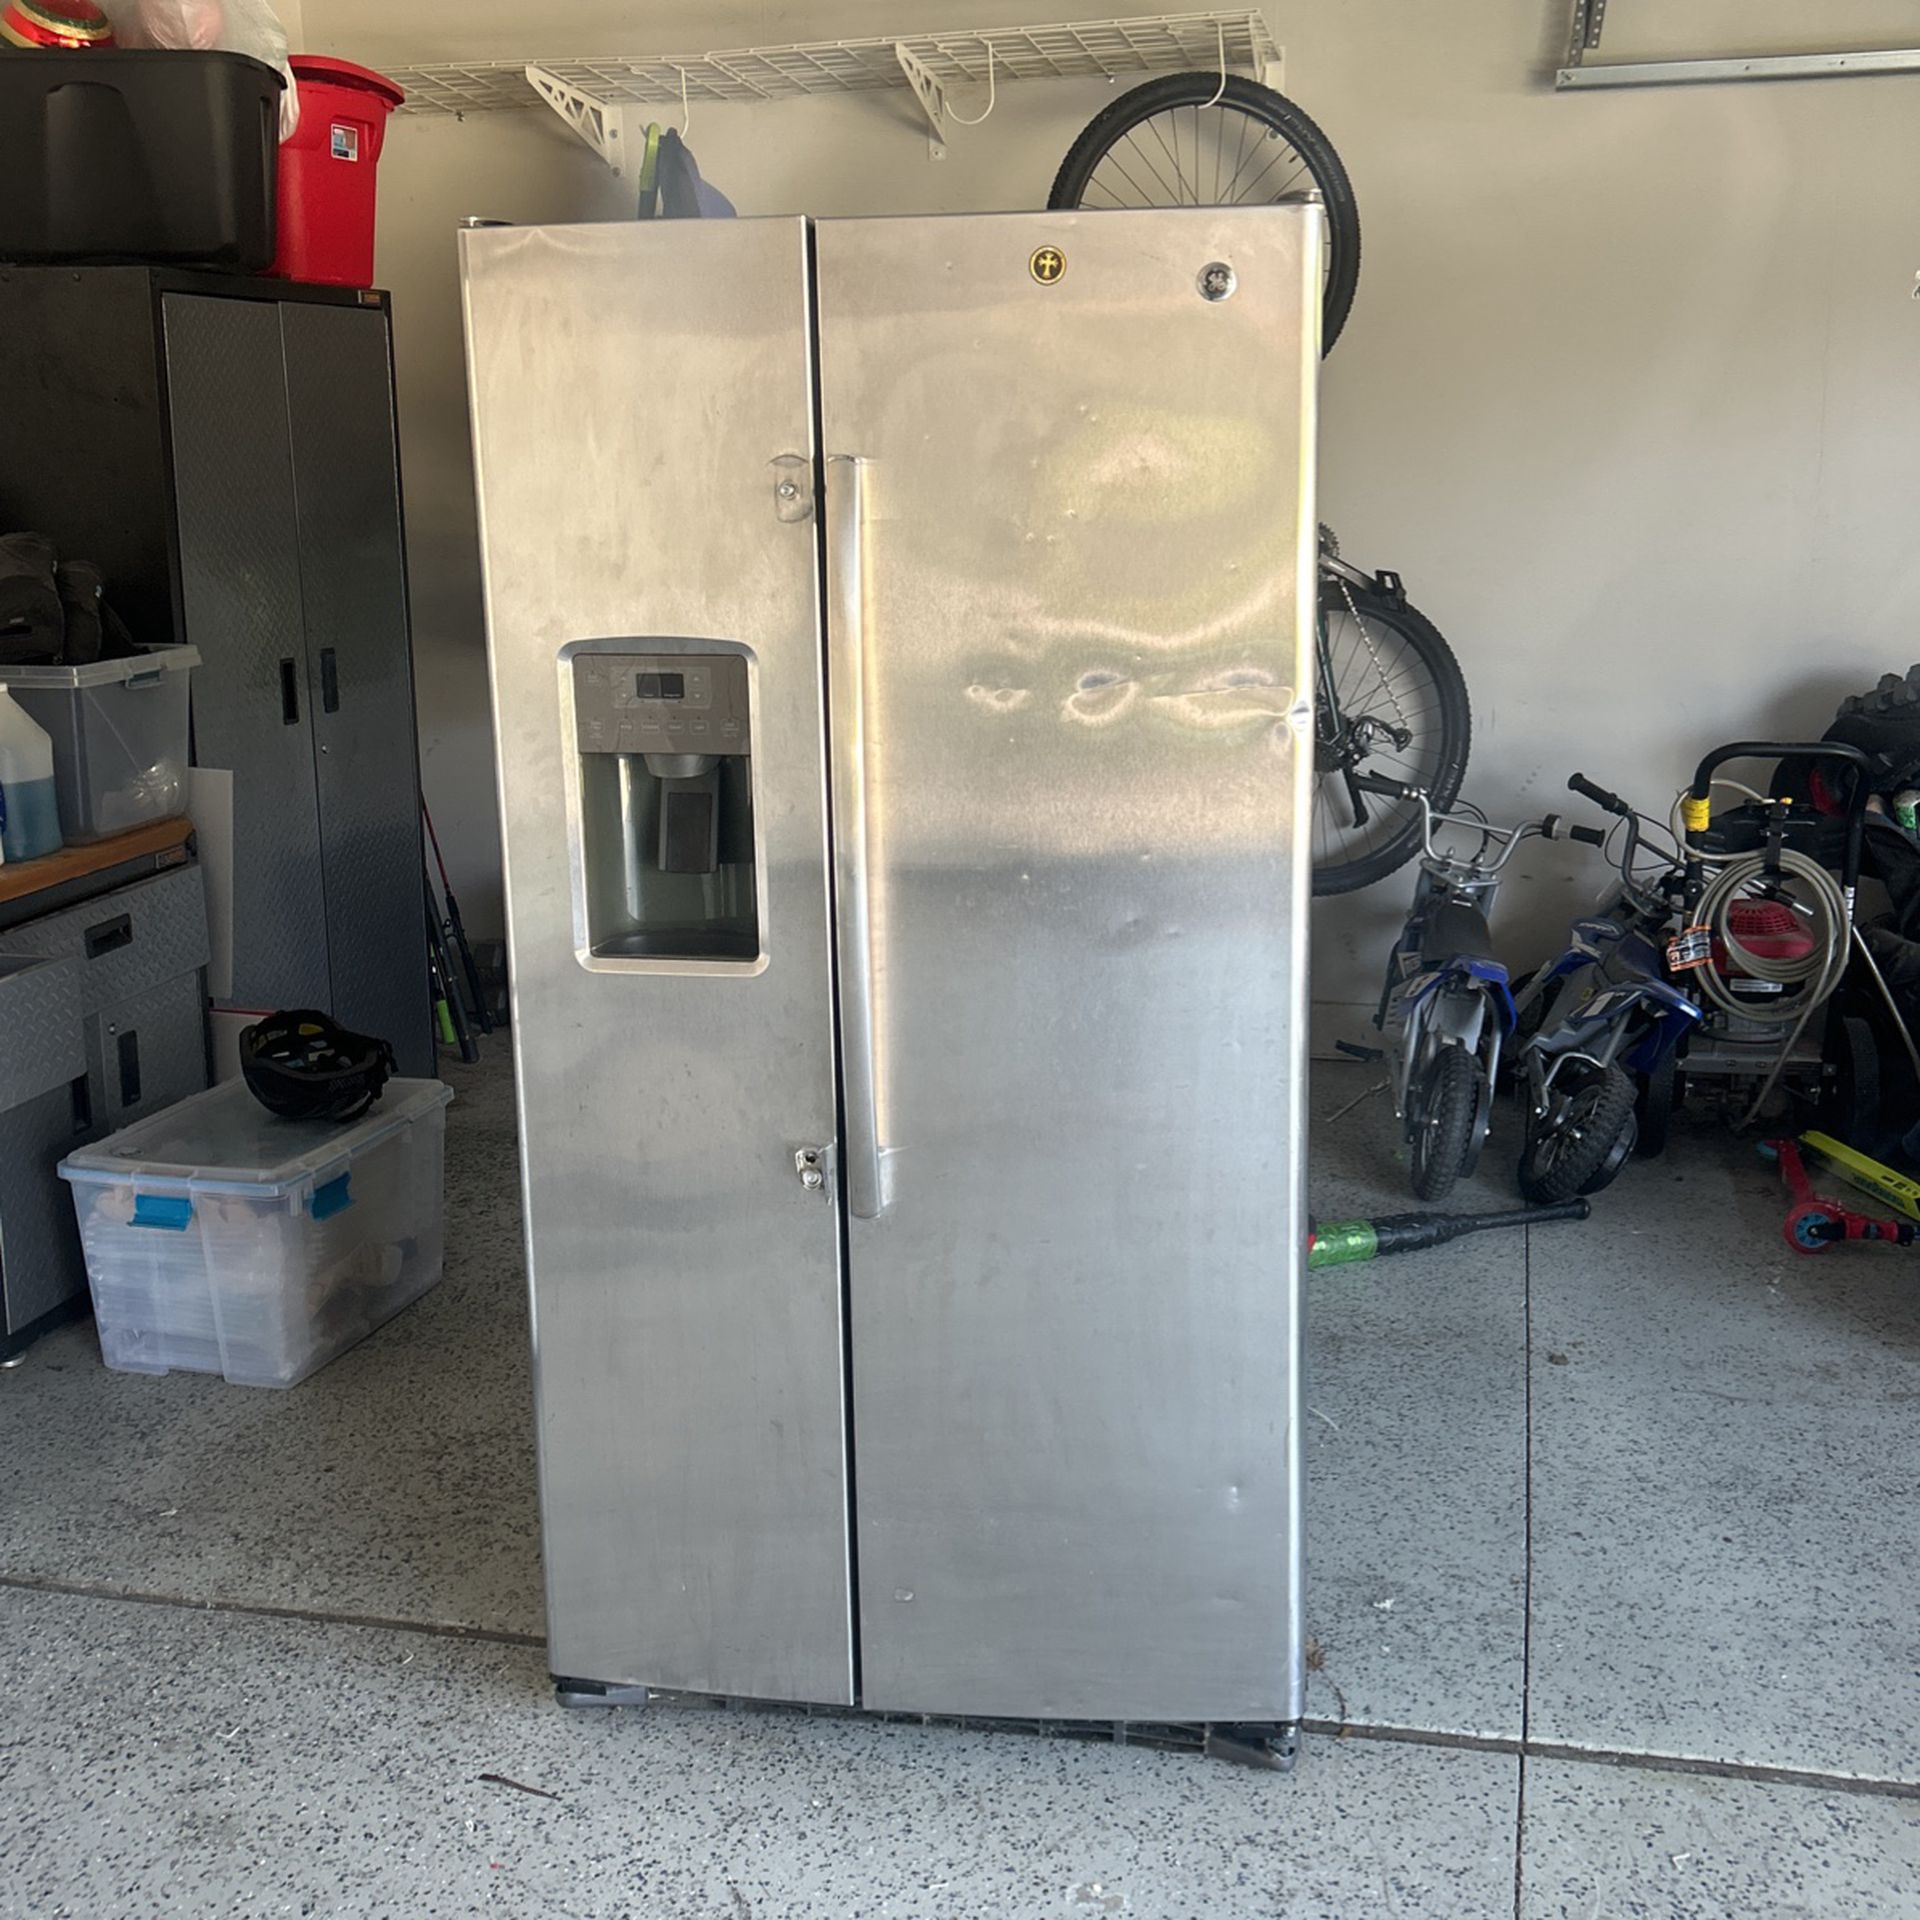 GE Used Refrigerator Double Door